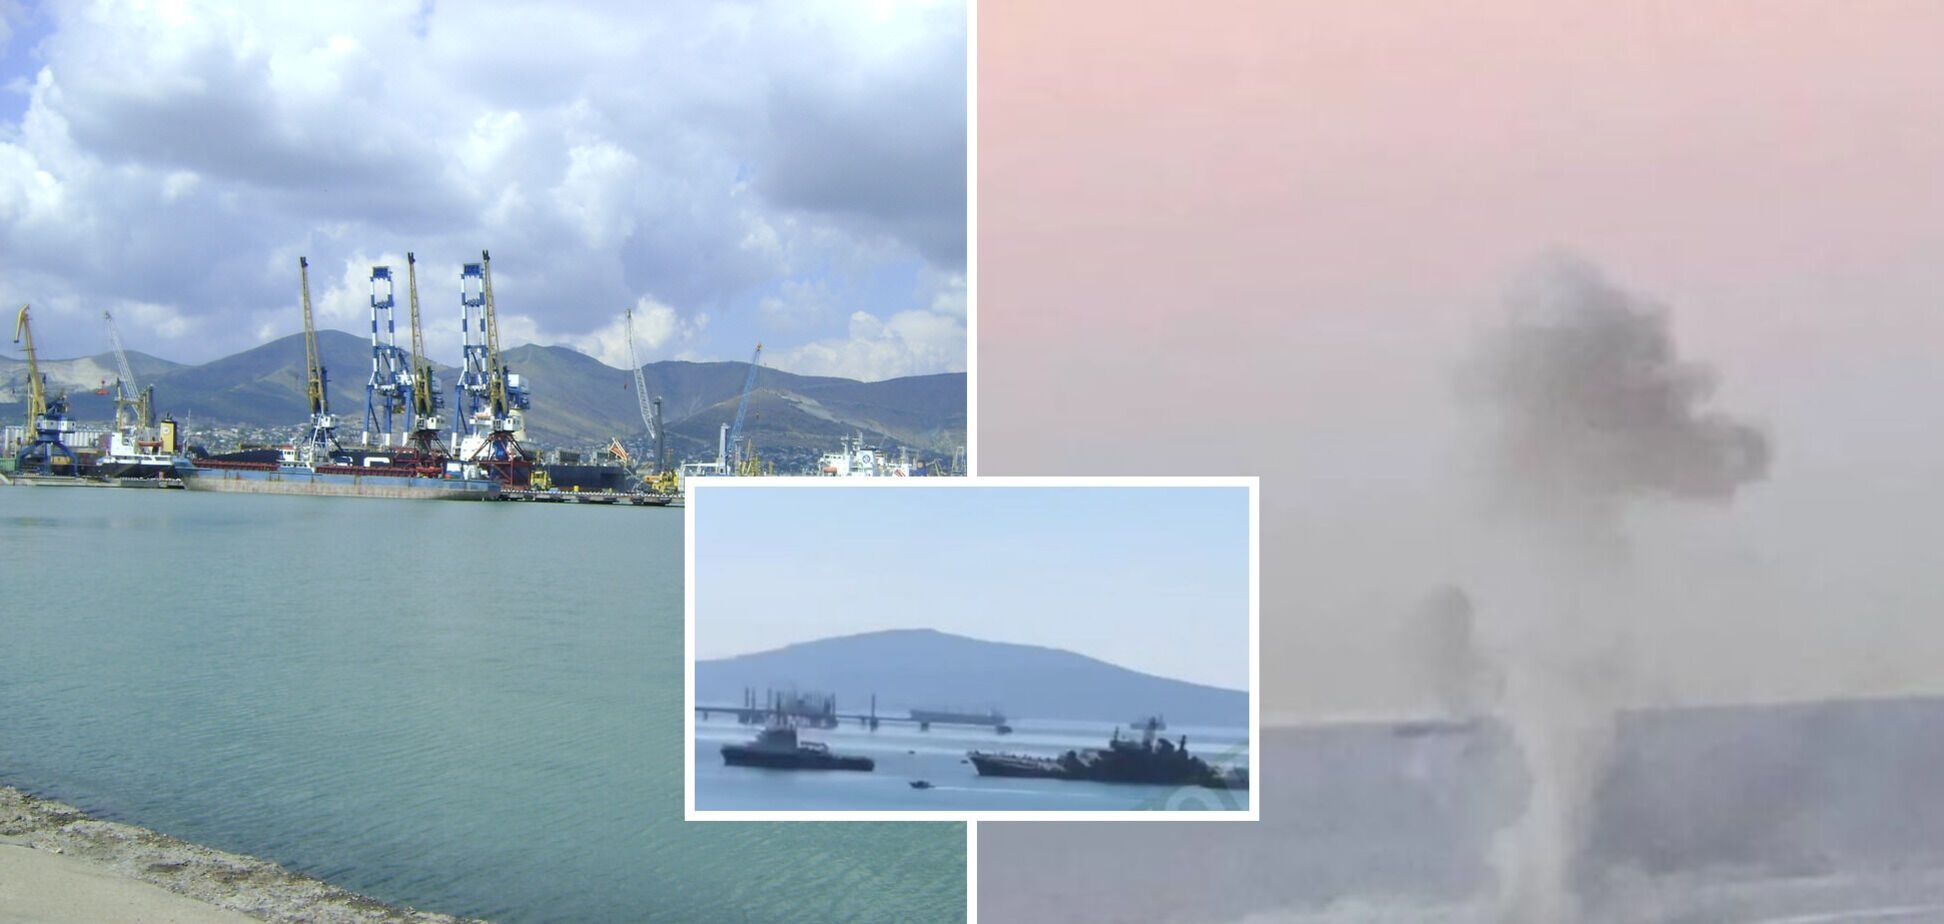 Выдающаяся операция СБУ с ВМС: атака дронов серьезно меняет обстановку в Черном море